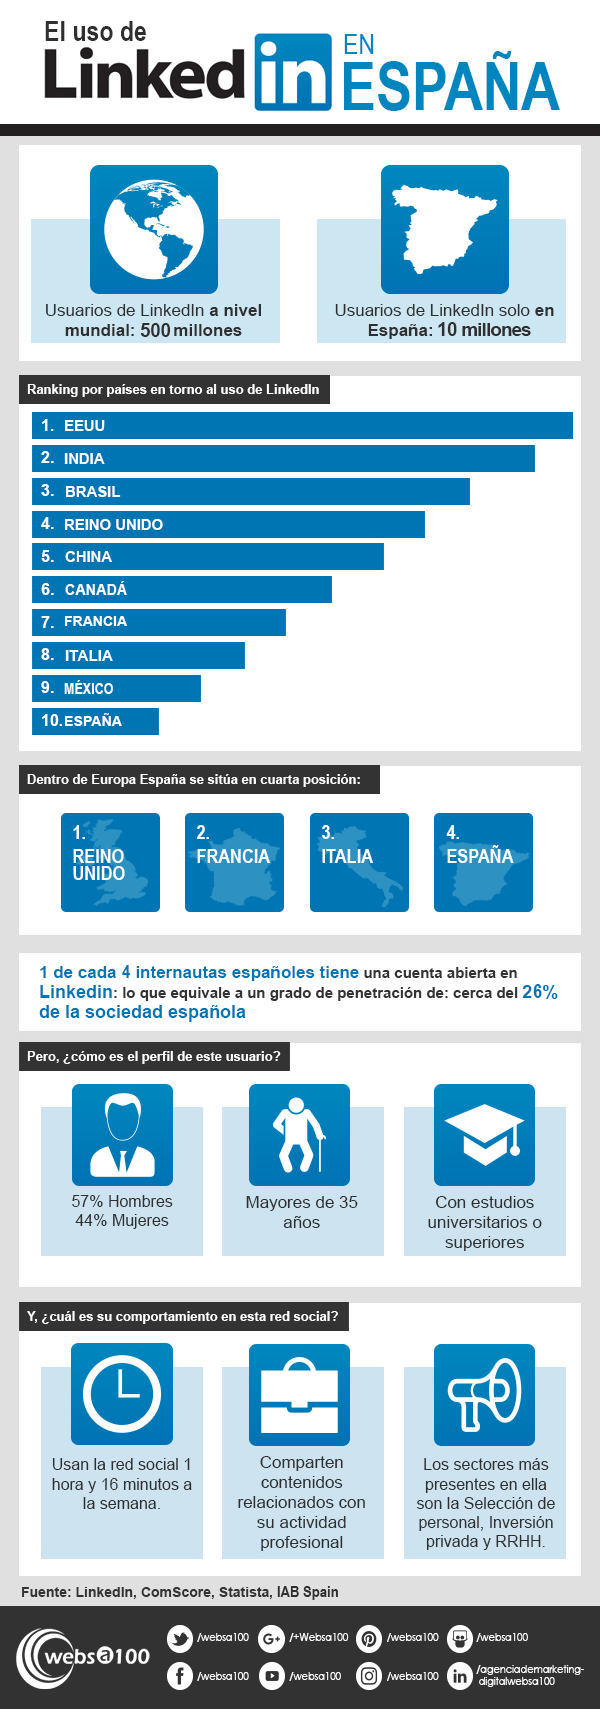 Infografía sobre el uso de LinkedIn en España